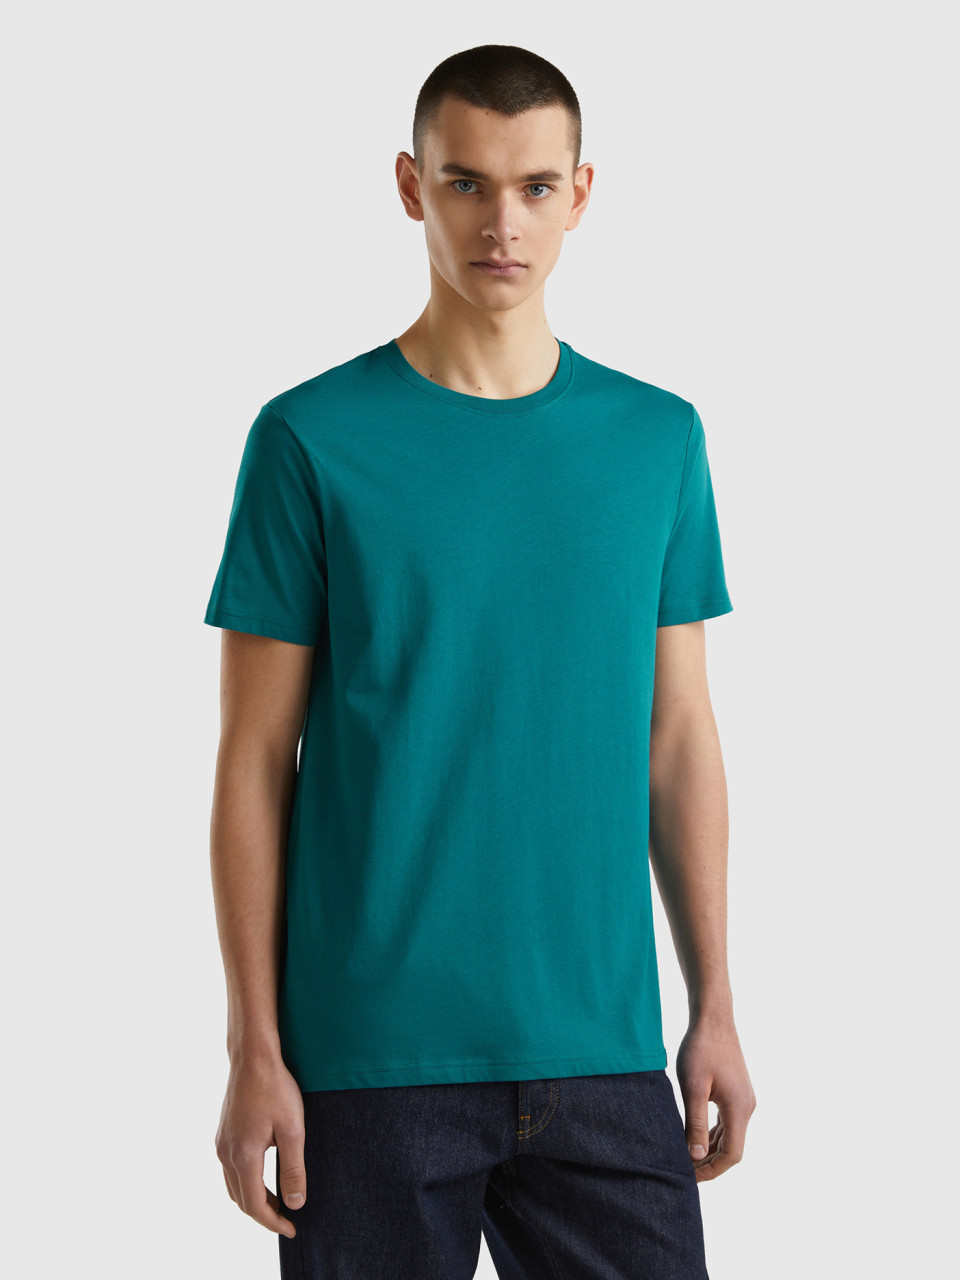 Benetton, Teal Green T-shirt, Teal, Men